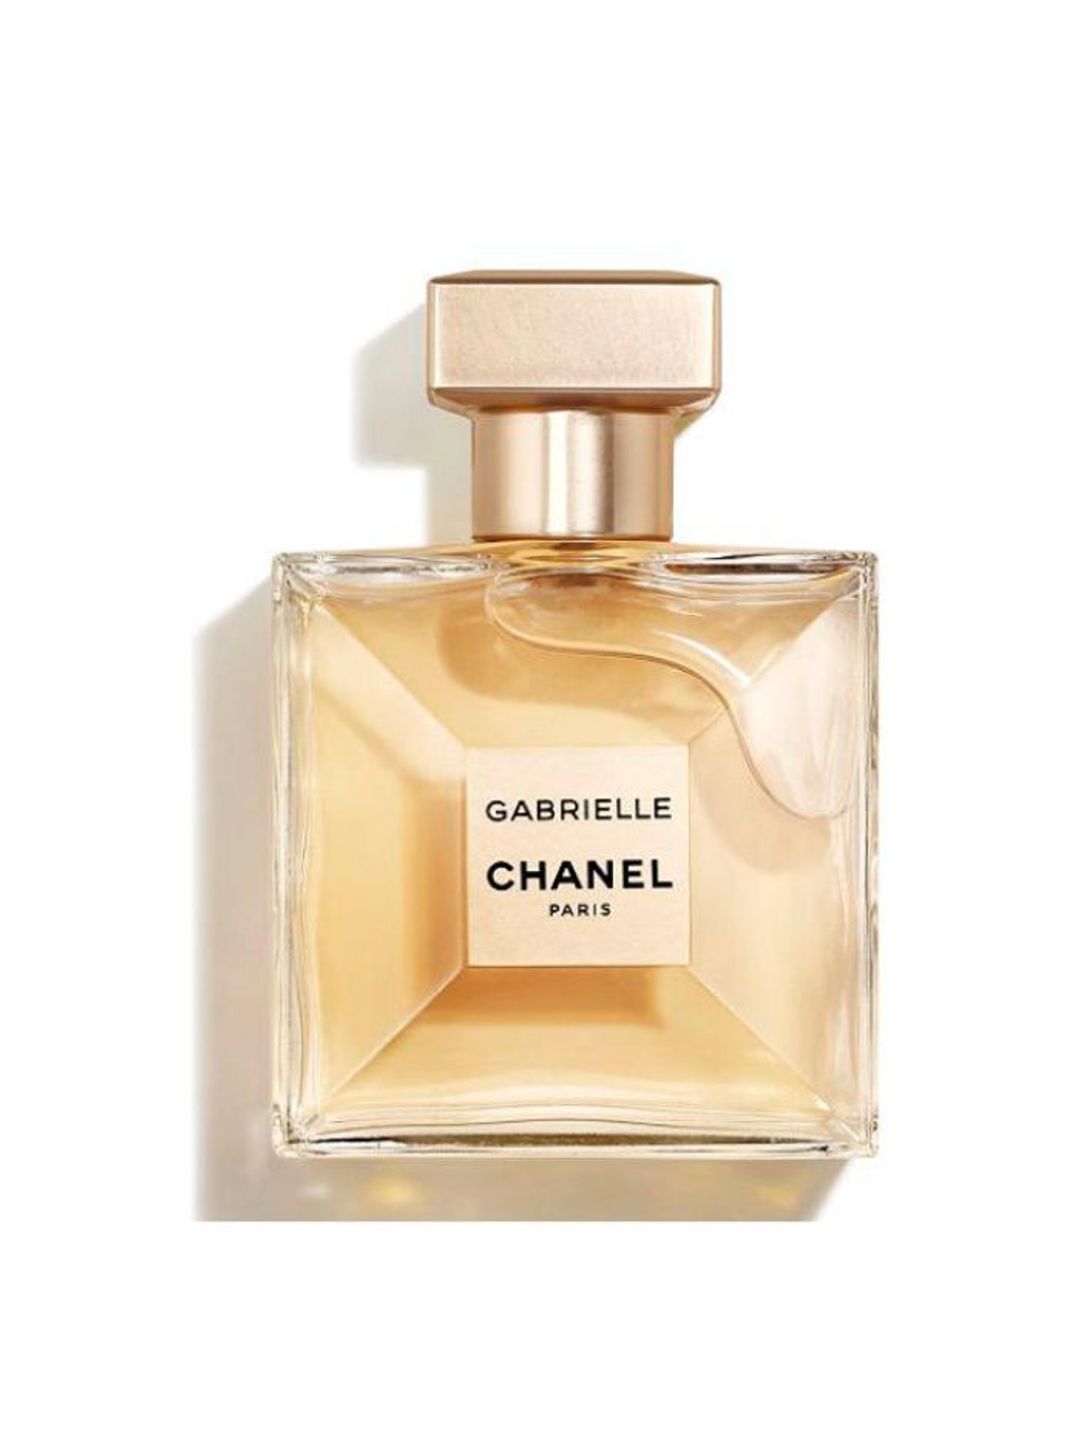 Gabrielle CHANEL Eau de Parfum 50ml - Chanel